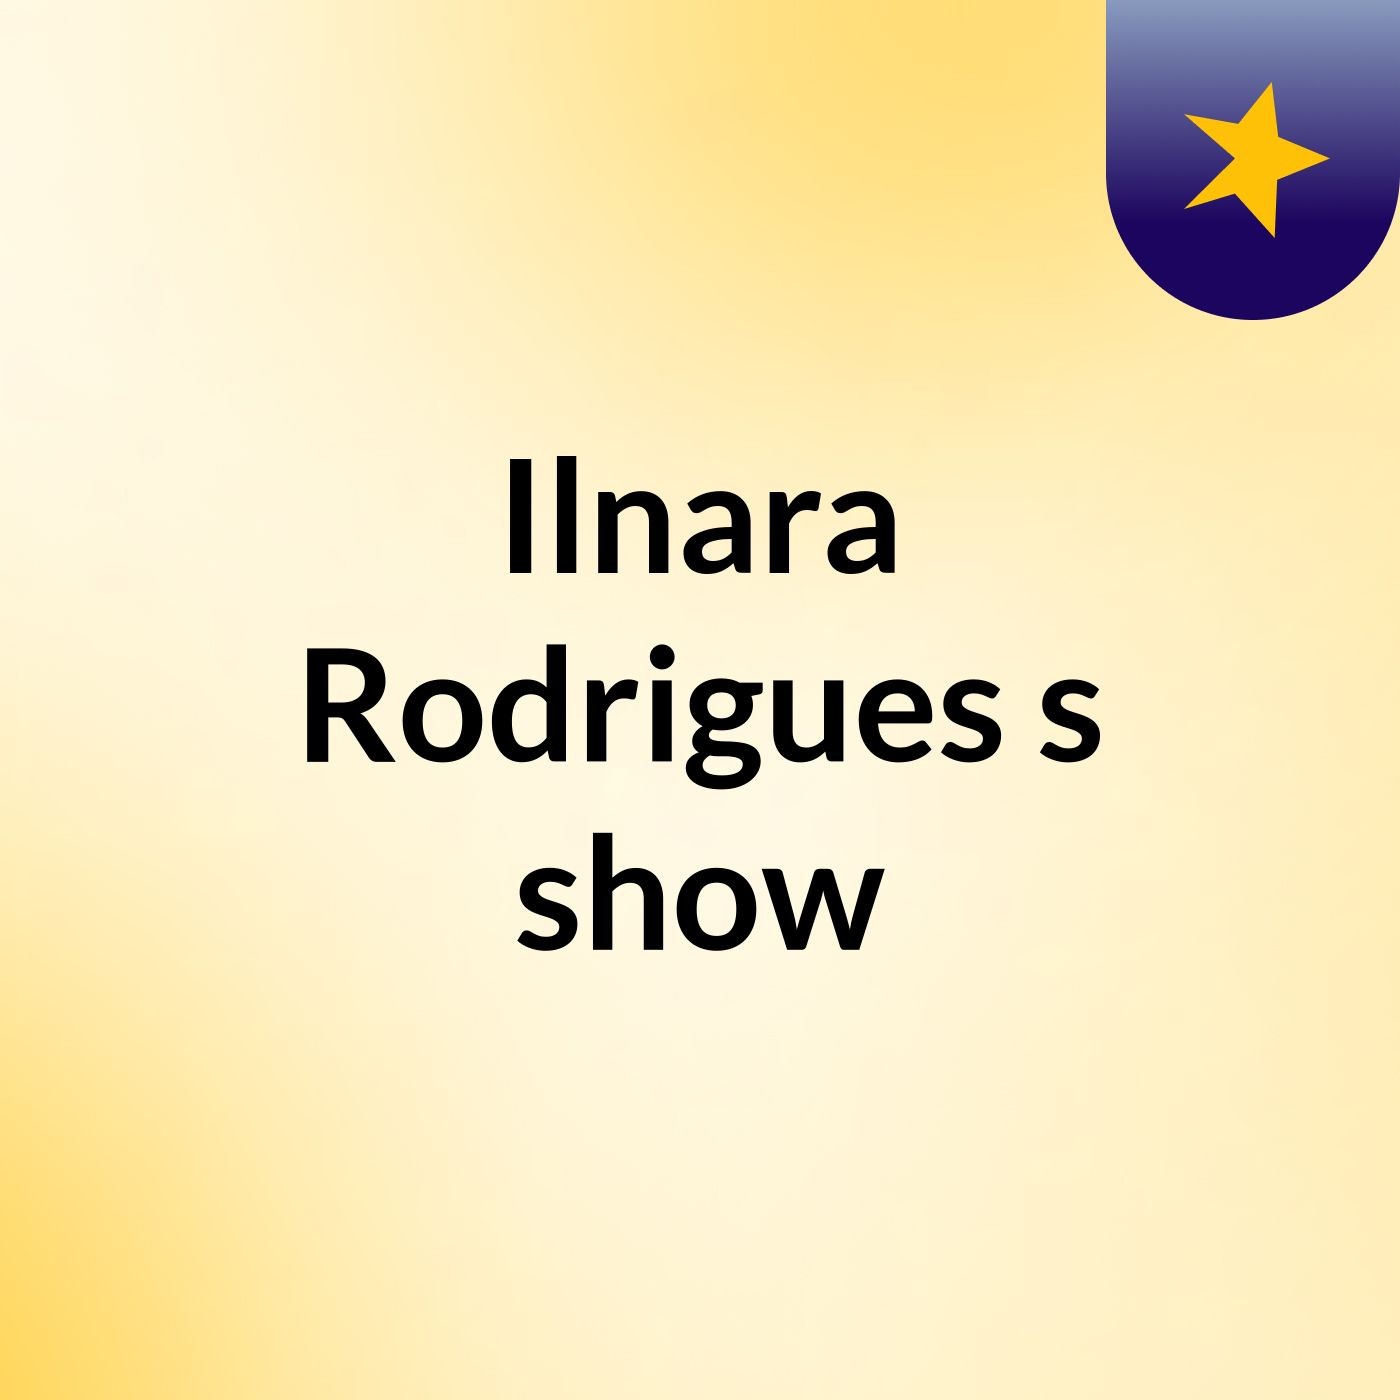 Ilnara Rodrigues's show